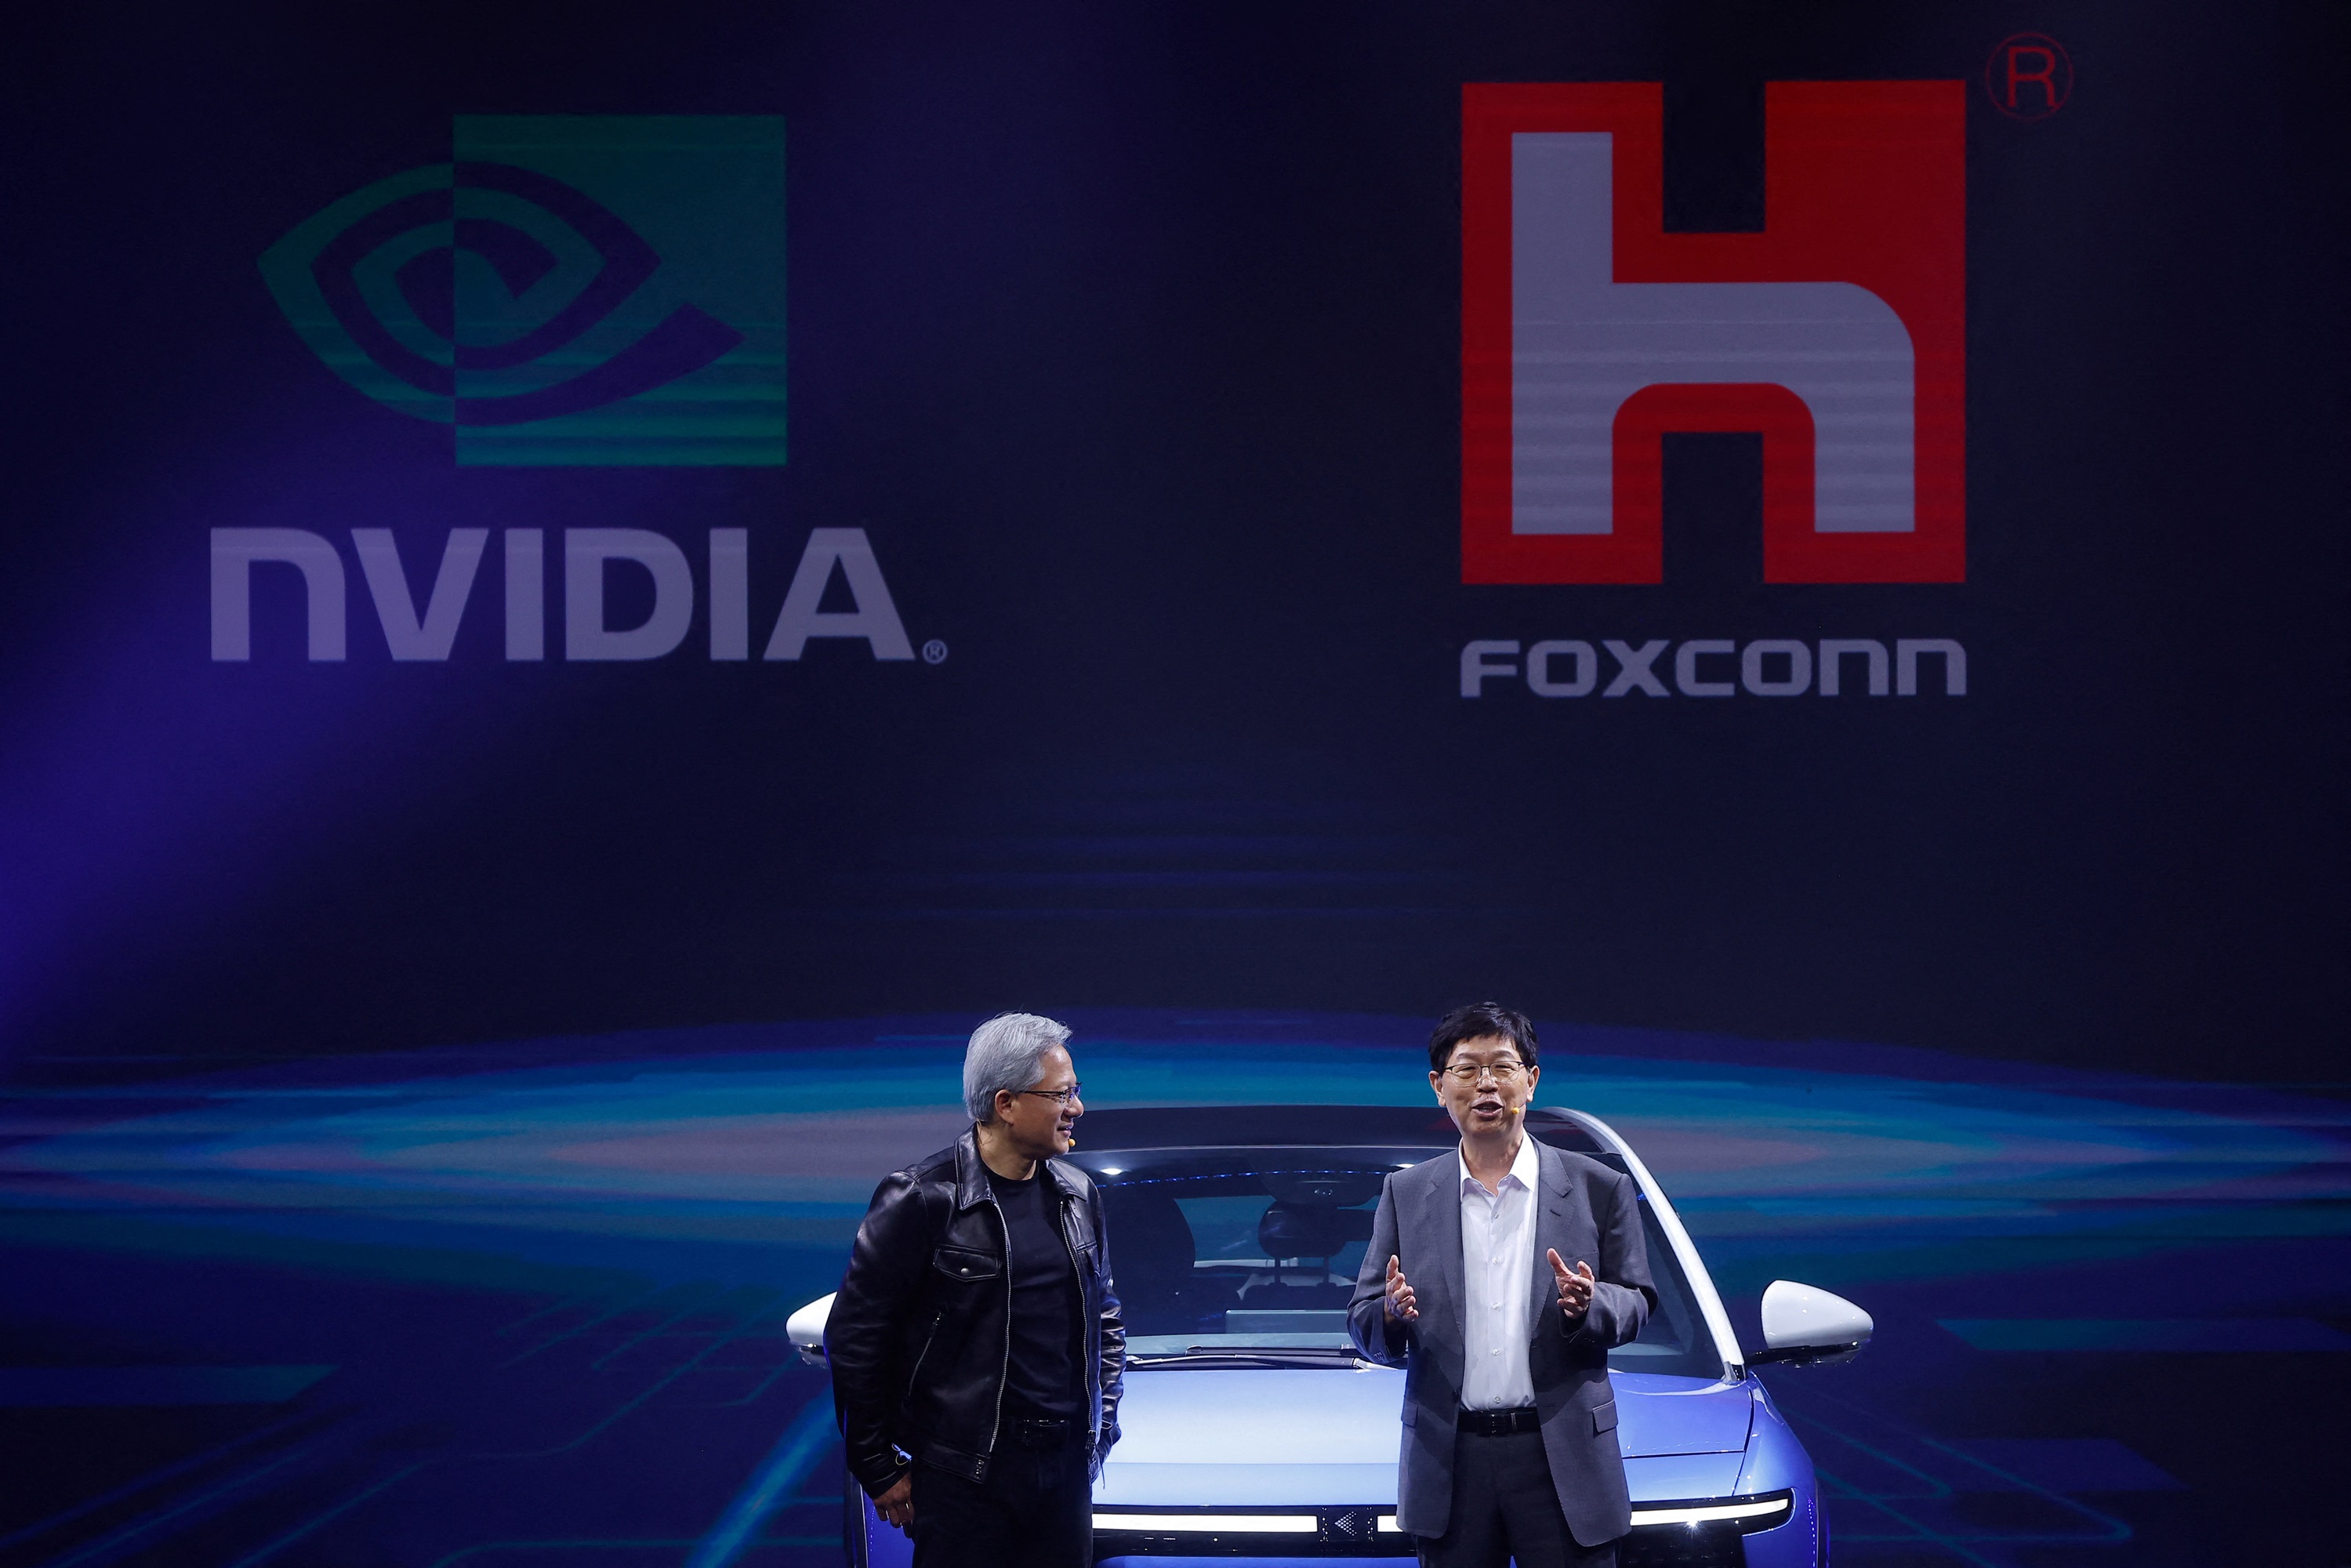 Foxconn e Nvidia hanno annunciato la creazione di "fabbriche di intelligenza artificiale".